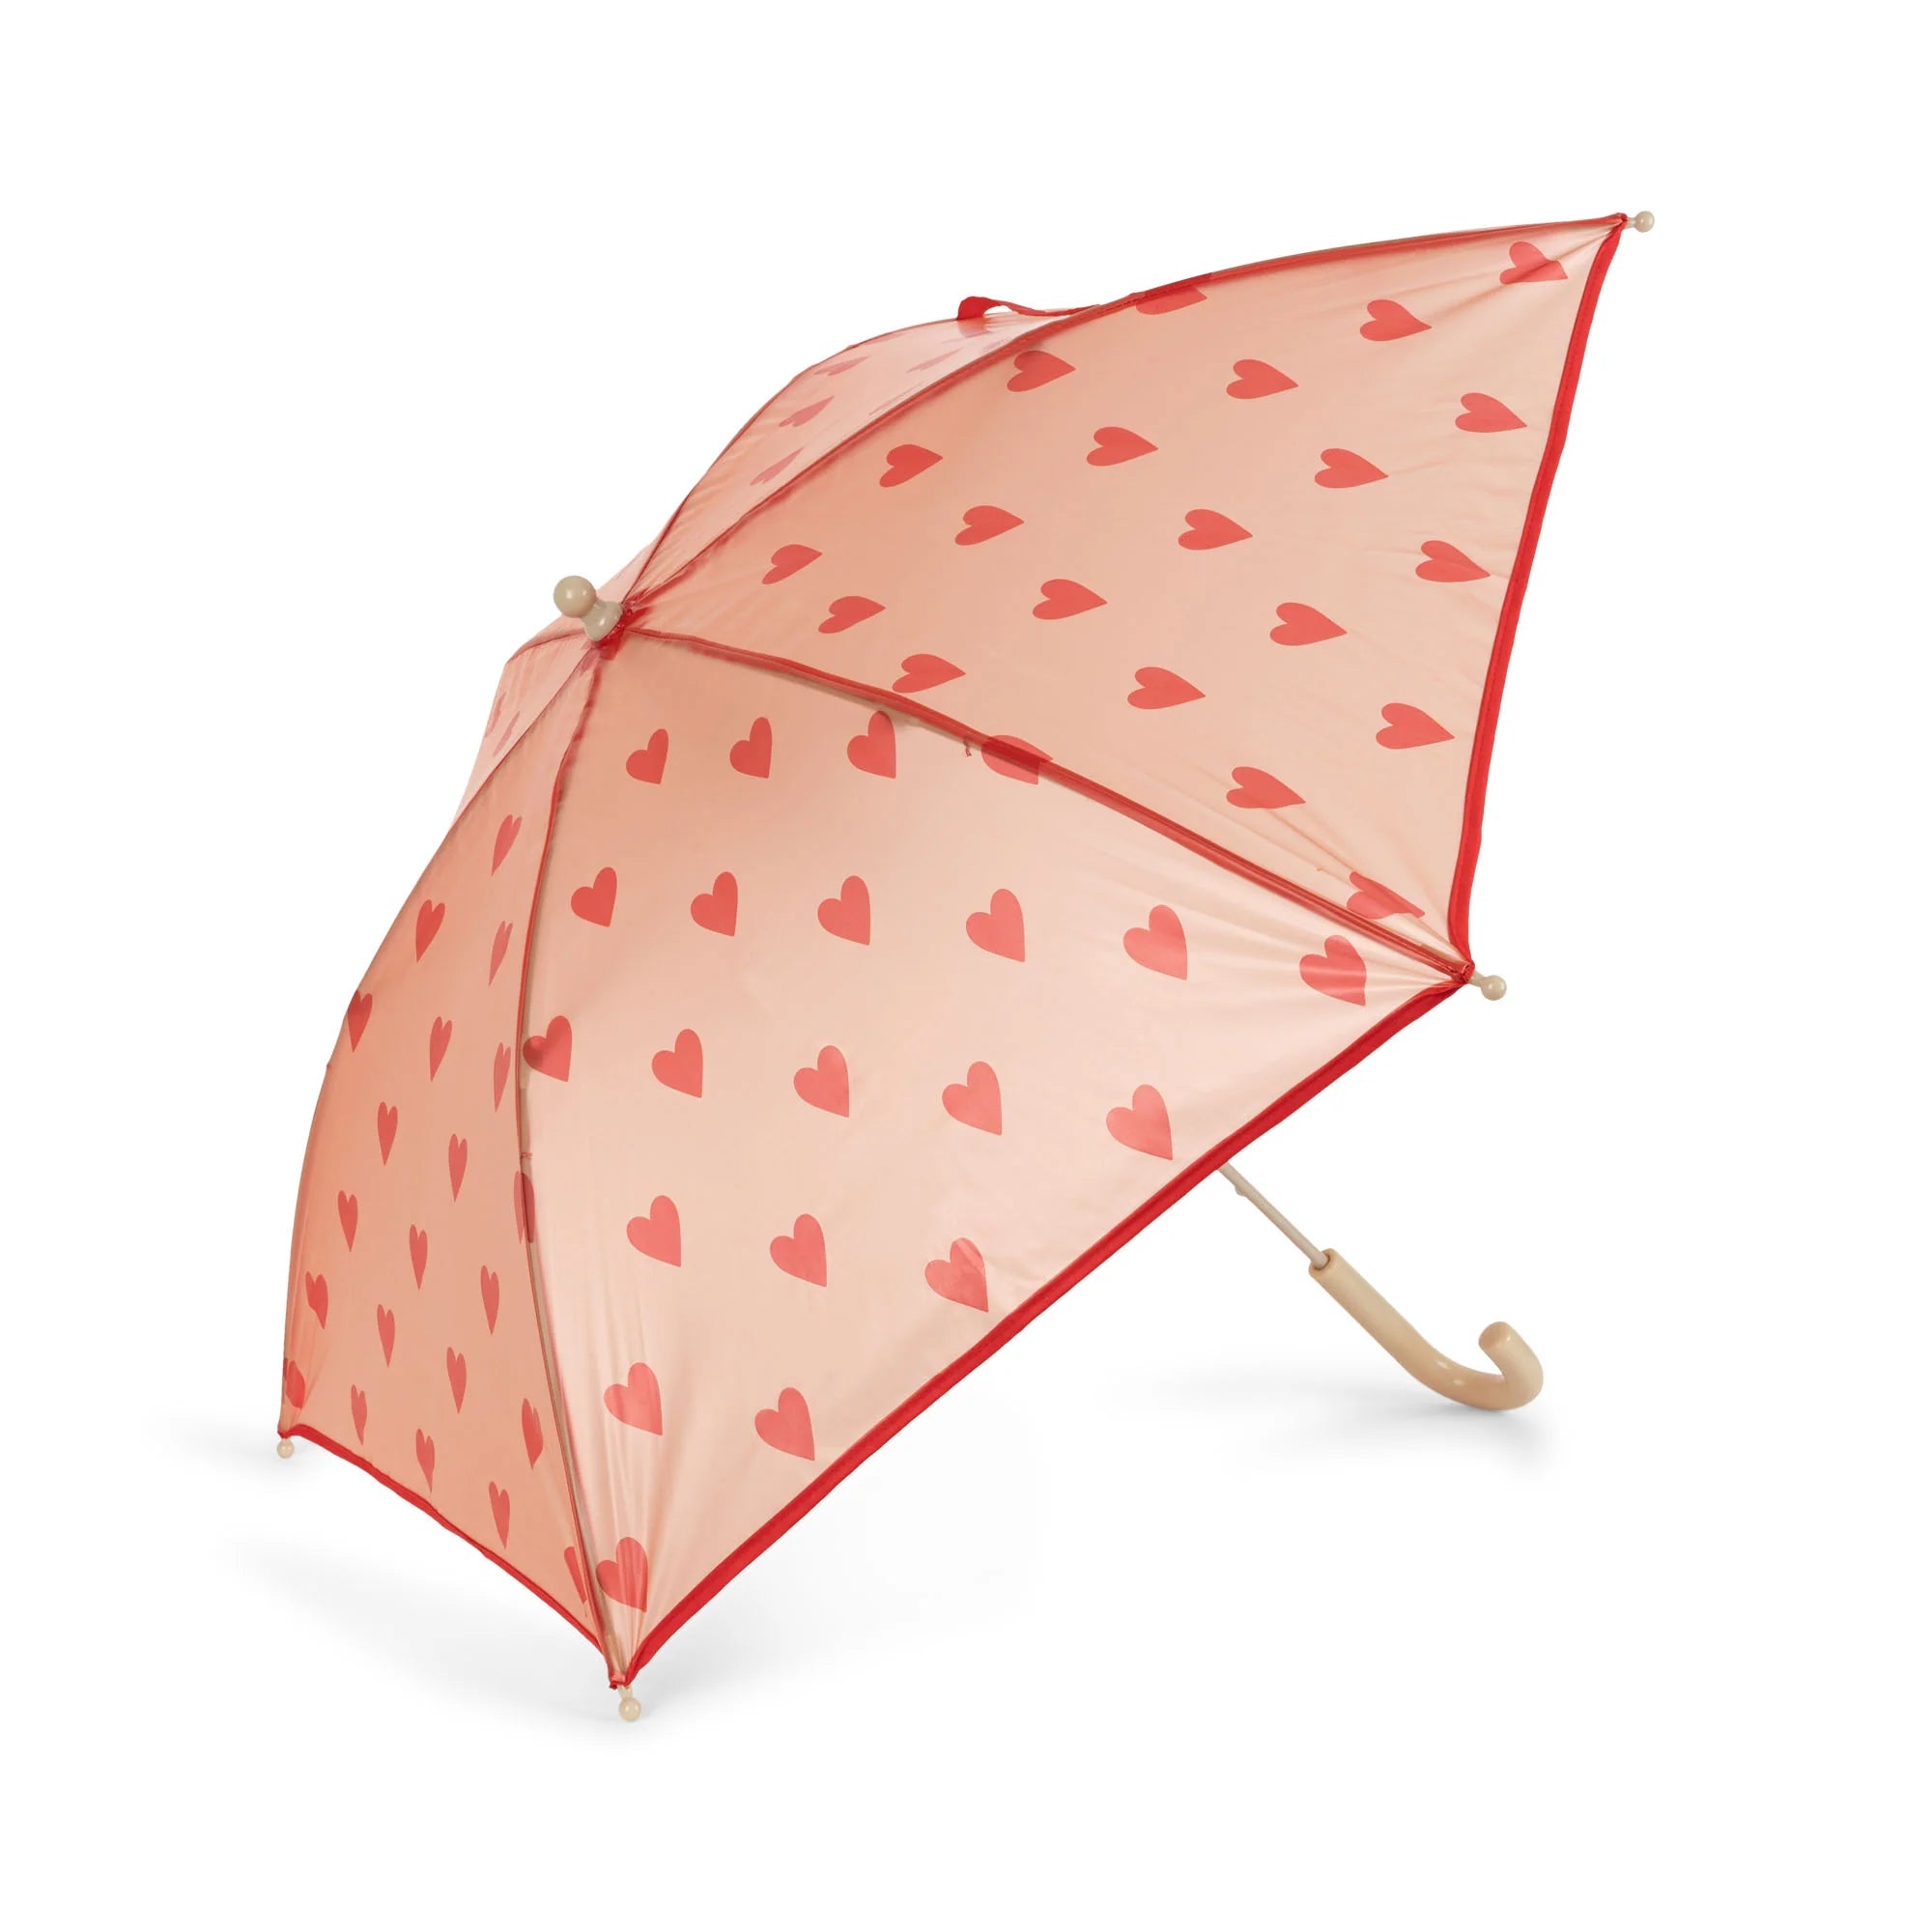 BRUME_UMBRELLA-Umbrellas-KS2857-MON_GRANDE_AMOUR_jpg.webp